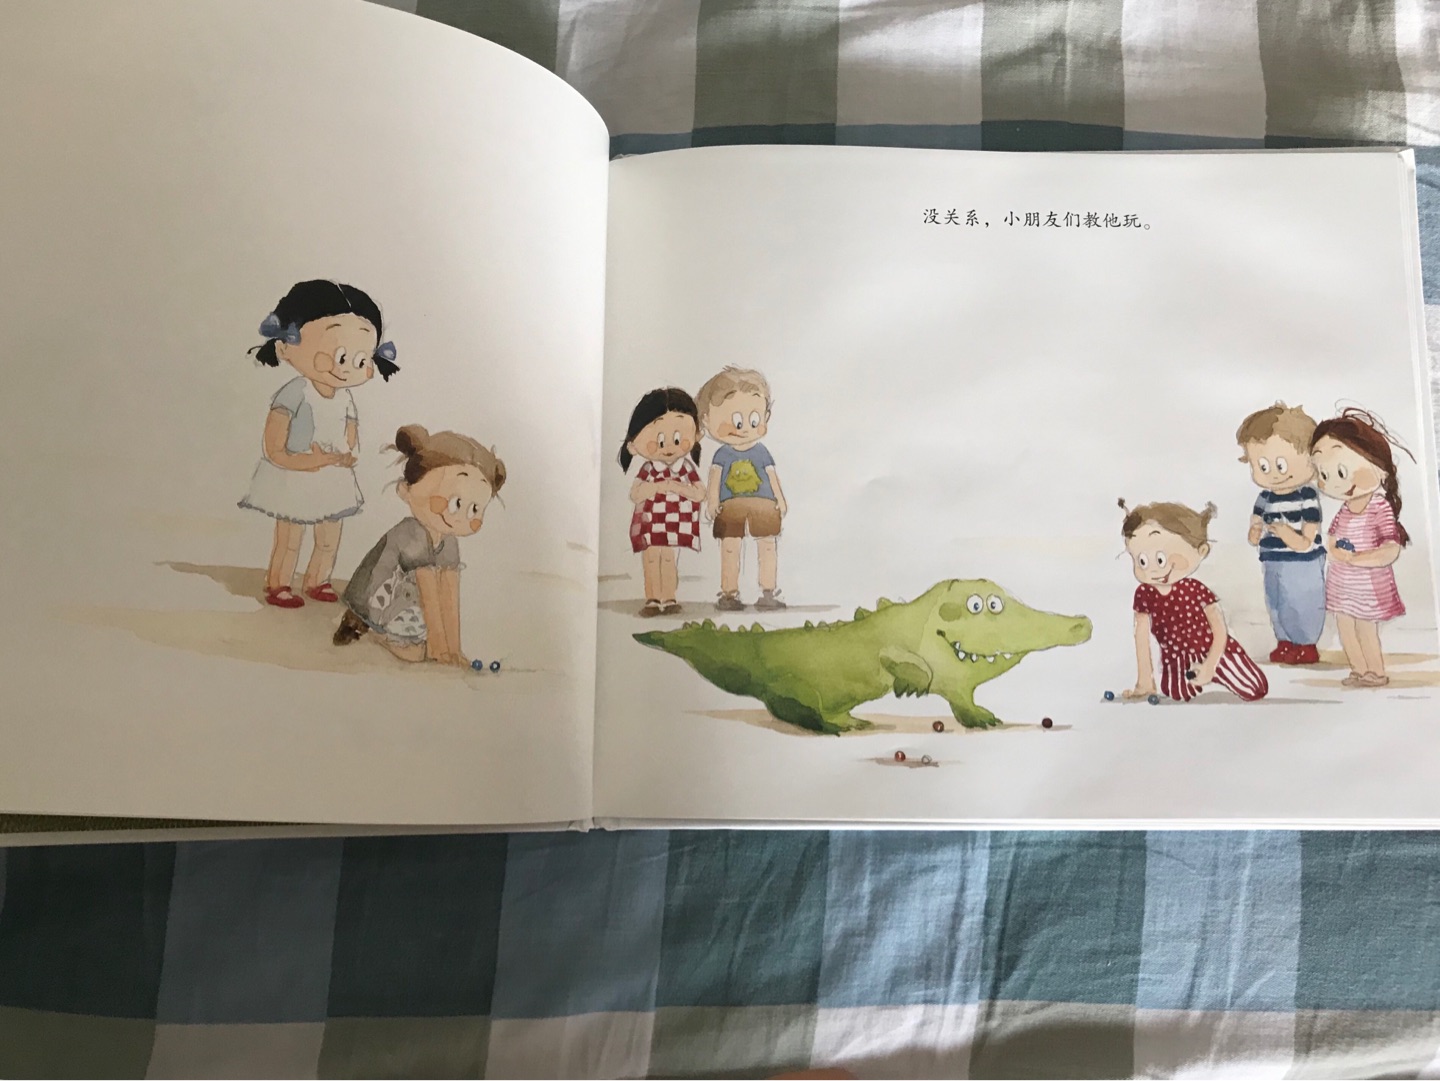 非常适合2-4岁小朋友与父母亲子阅读，小鳄鱼像极了刚入园的小朋友，对所有事物充满好奇，但又有些胆怯，不知道如何与其他小伙伴相处。这本绘本用幽默风趣的文字，配上可爱的插画，描绘了小朋友之间友爱互助的画面，温馨动人，帮助宝宝内心成长，值得推荐！